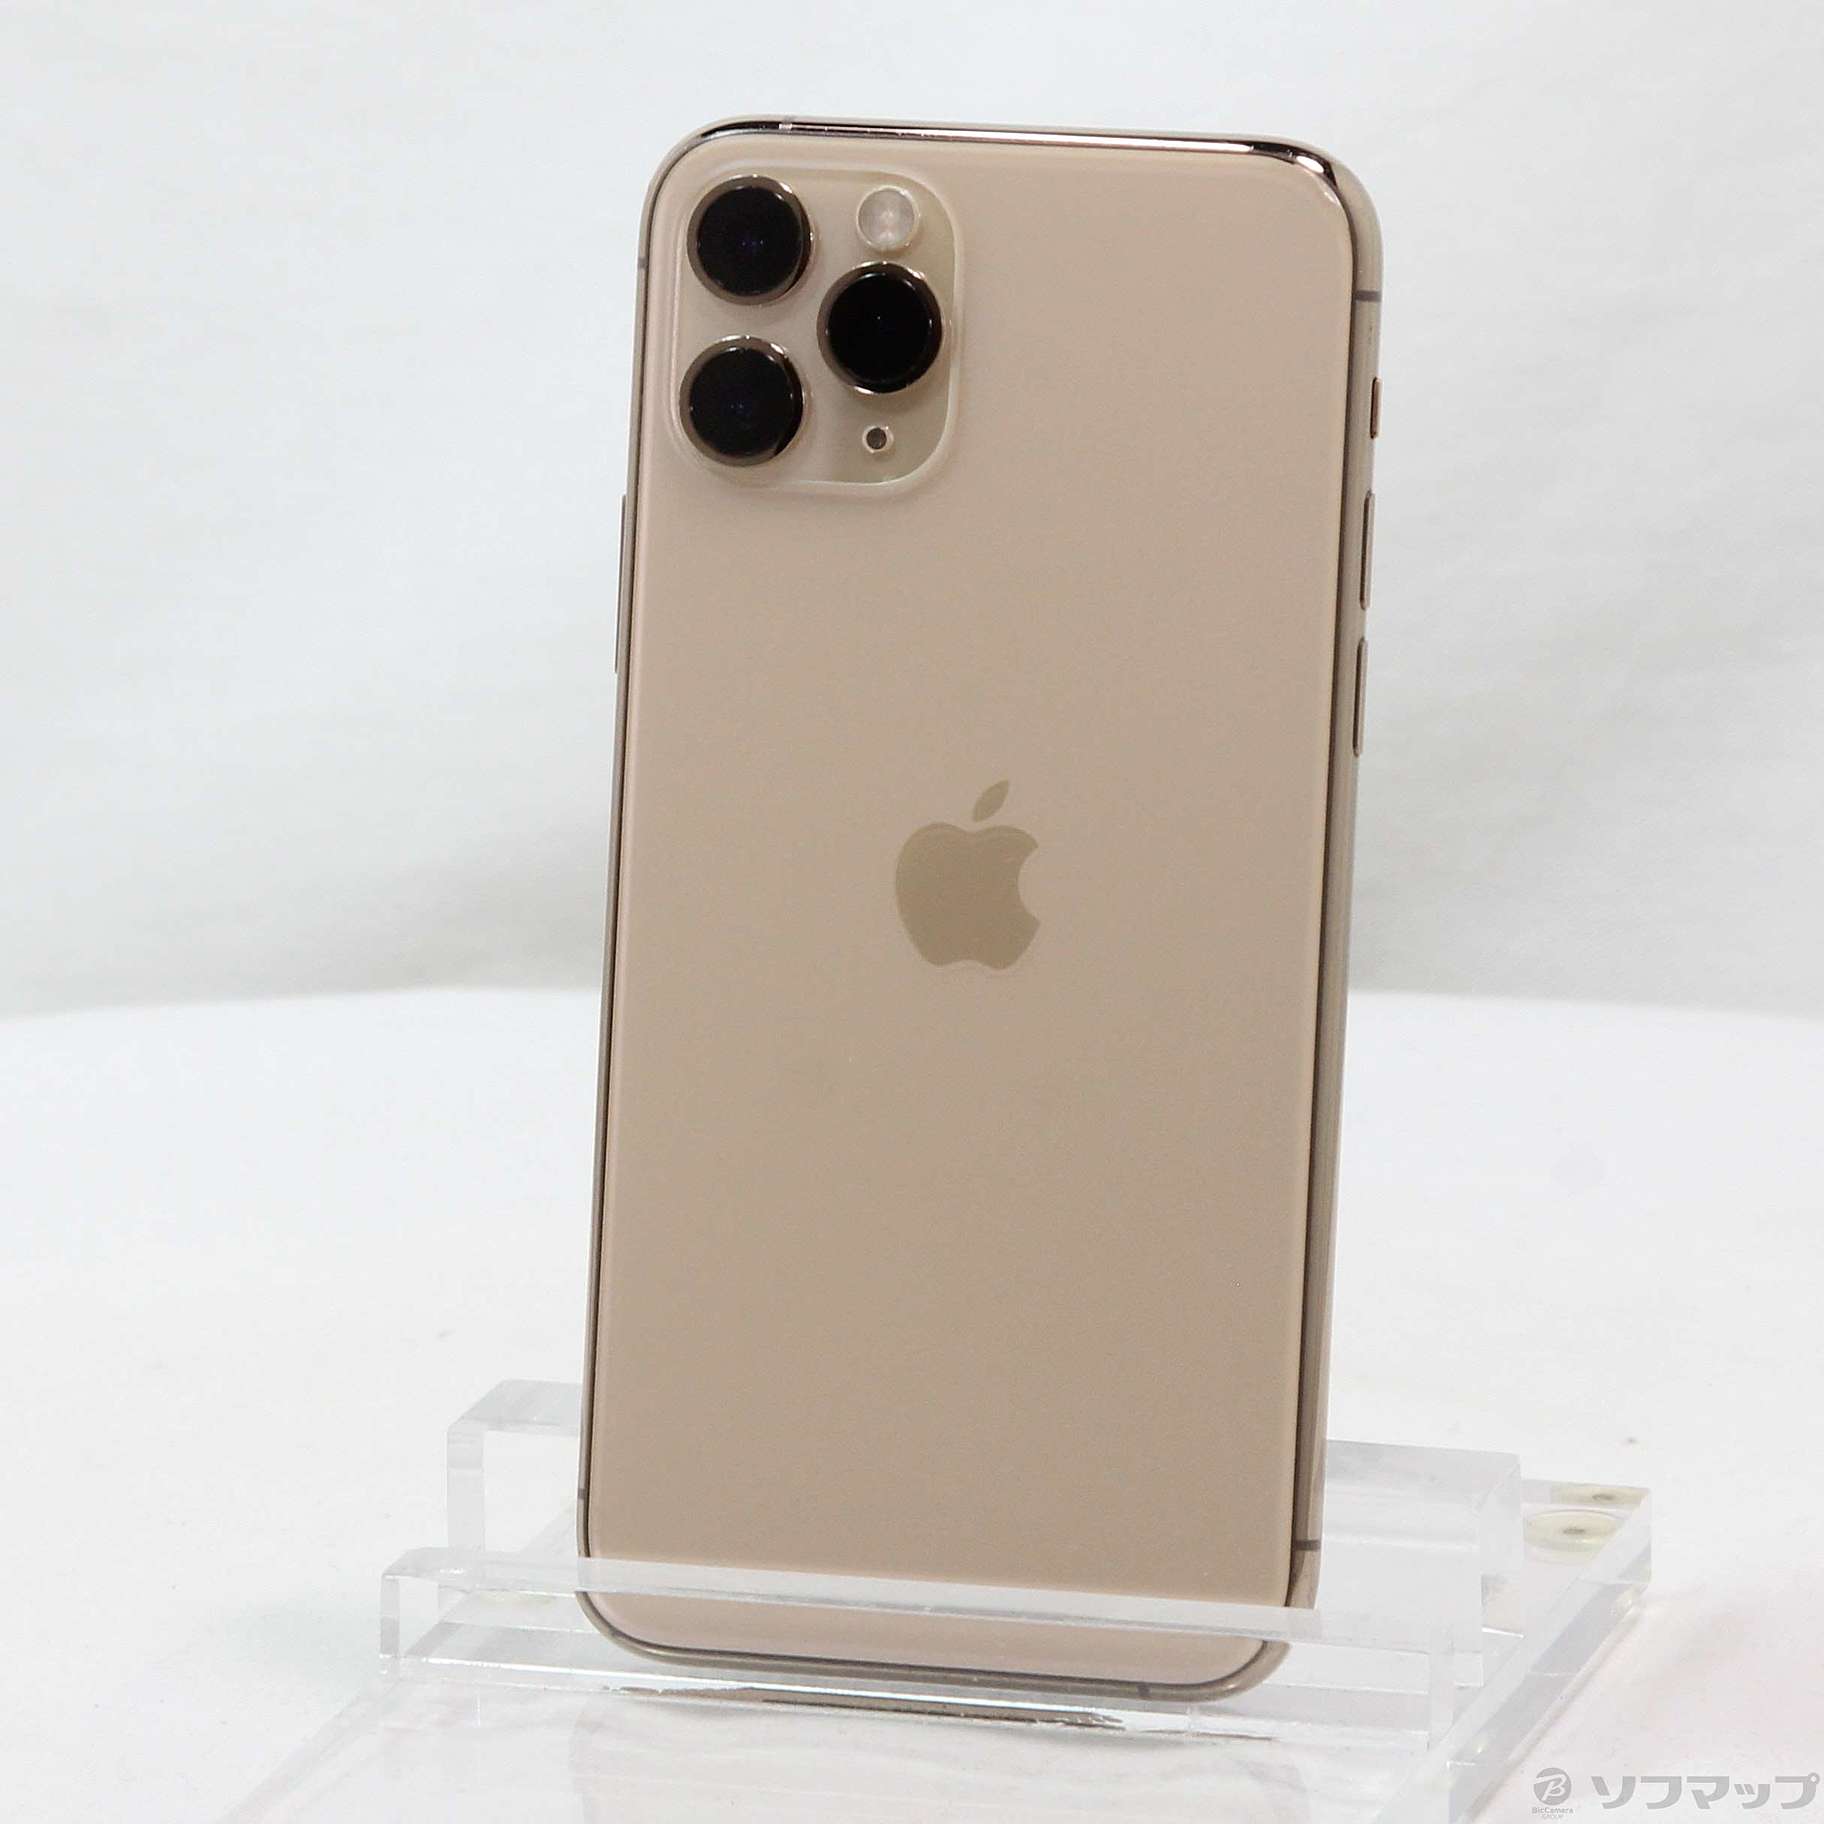 SIMフリー iPhone11 Pro 256GB ゴールド①バッテリーの状態と充電